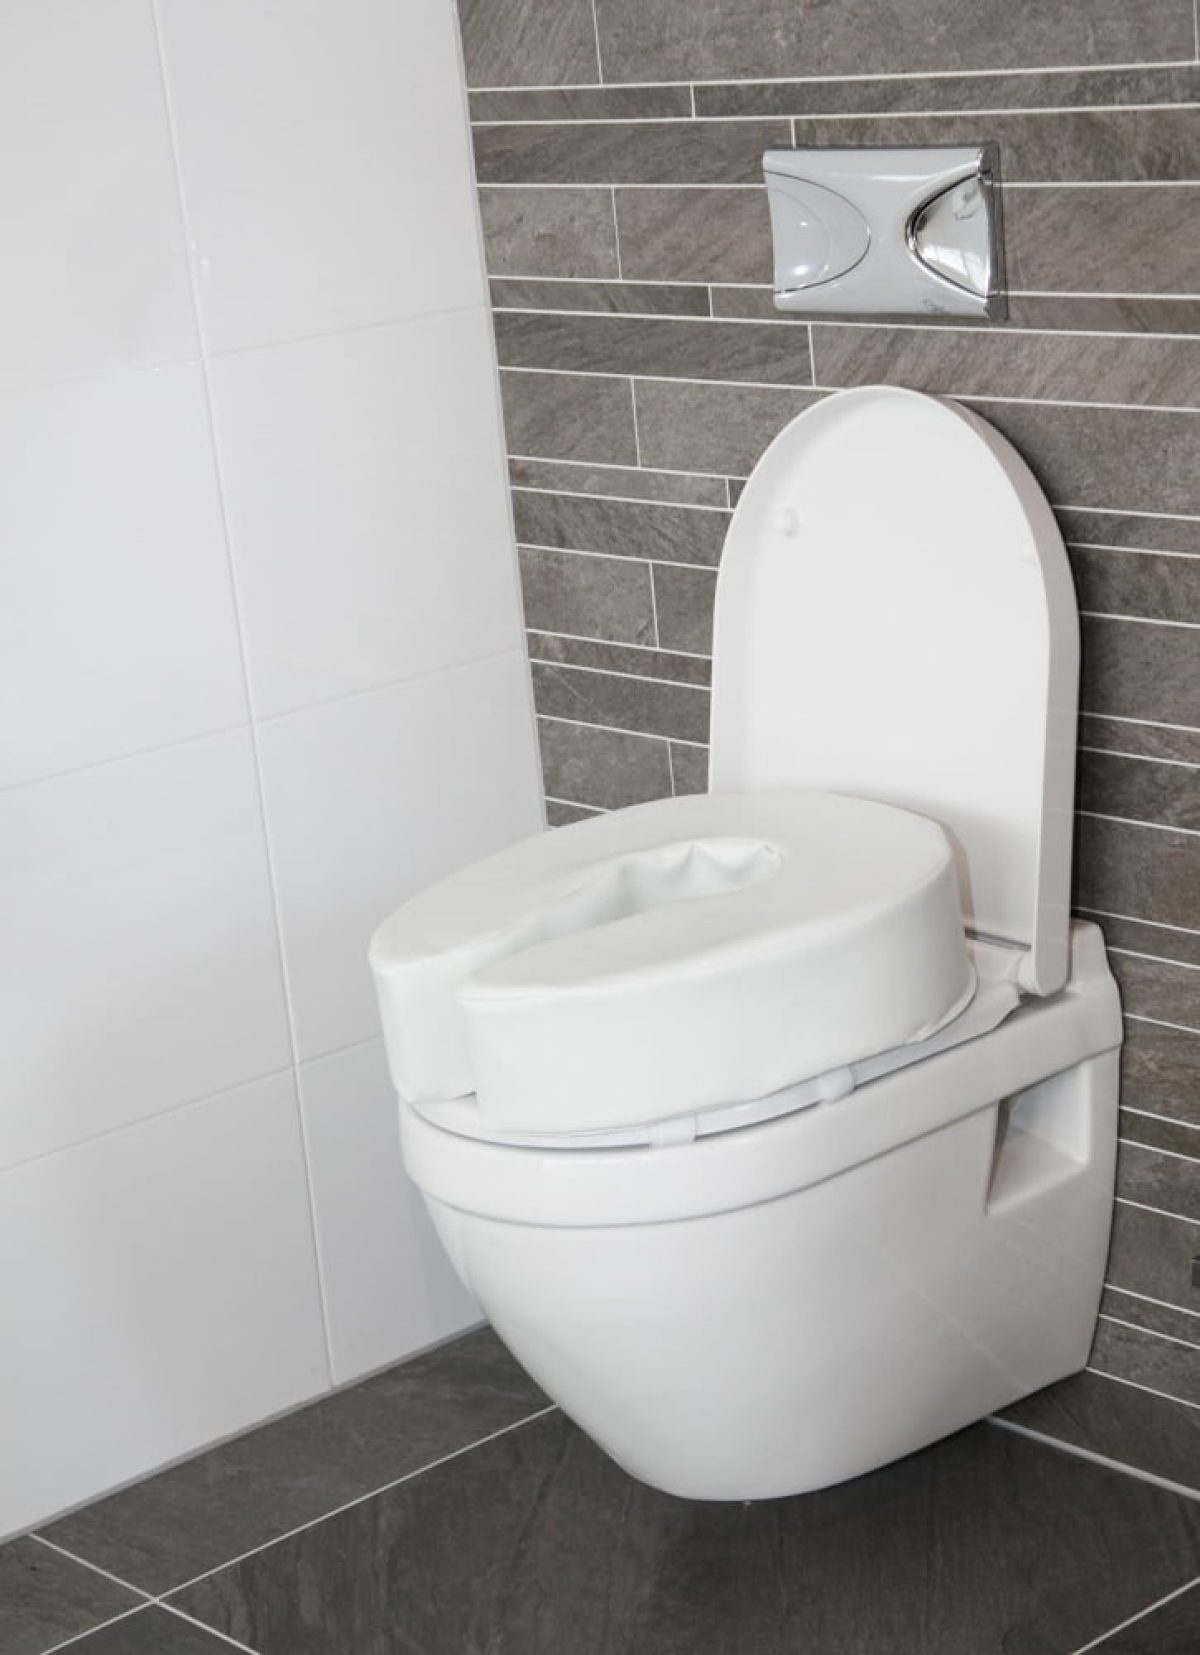 Rang Ontslag Microcomputer Toiletverhoger zacht voor op uw eigen toiletbril in 2 maten –  THUISZORGWINKEL.NL